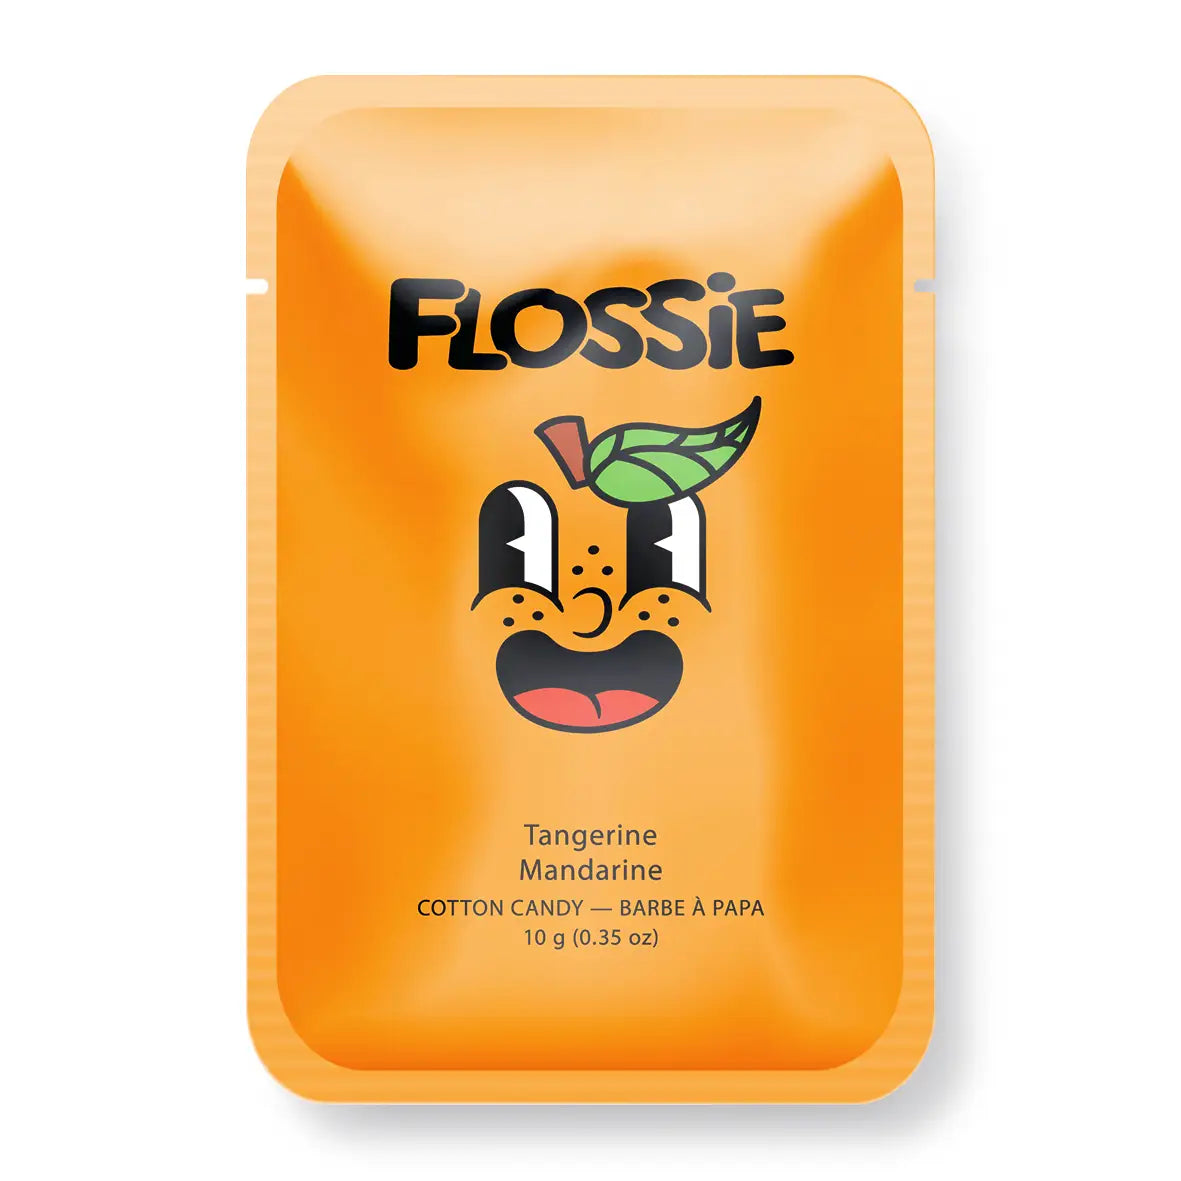 Flossie Tangerine Cotton Candy